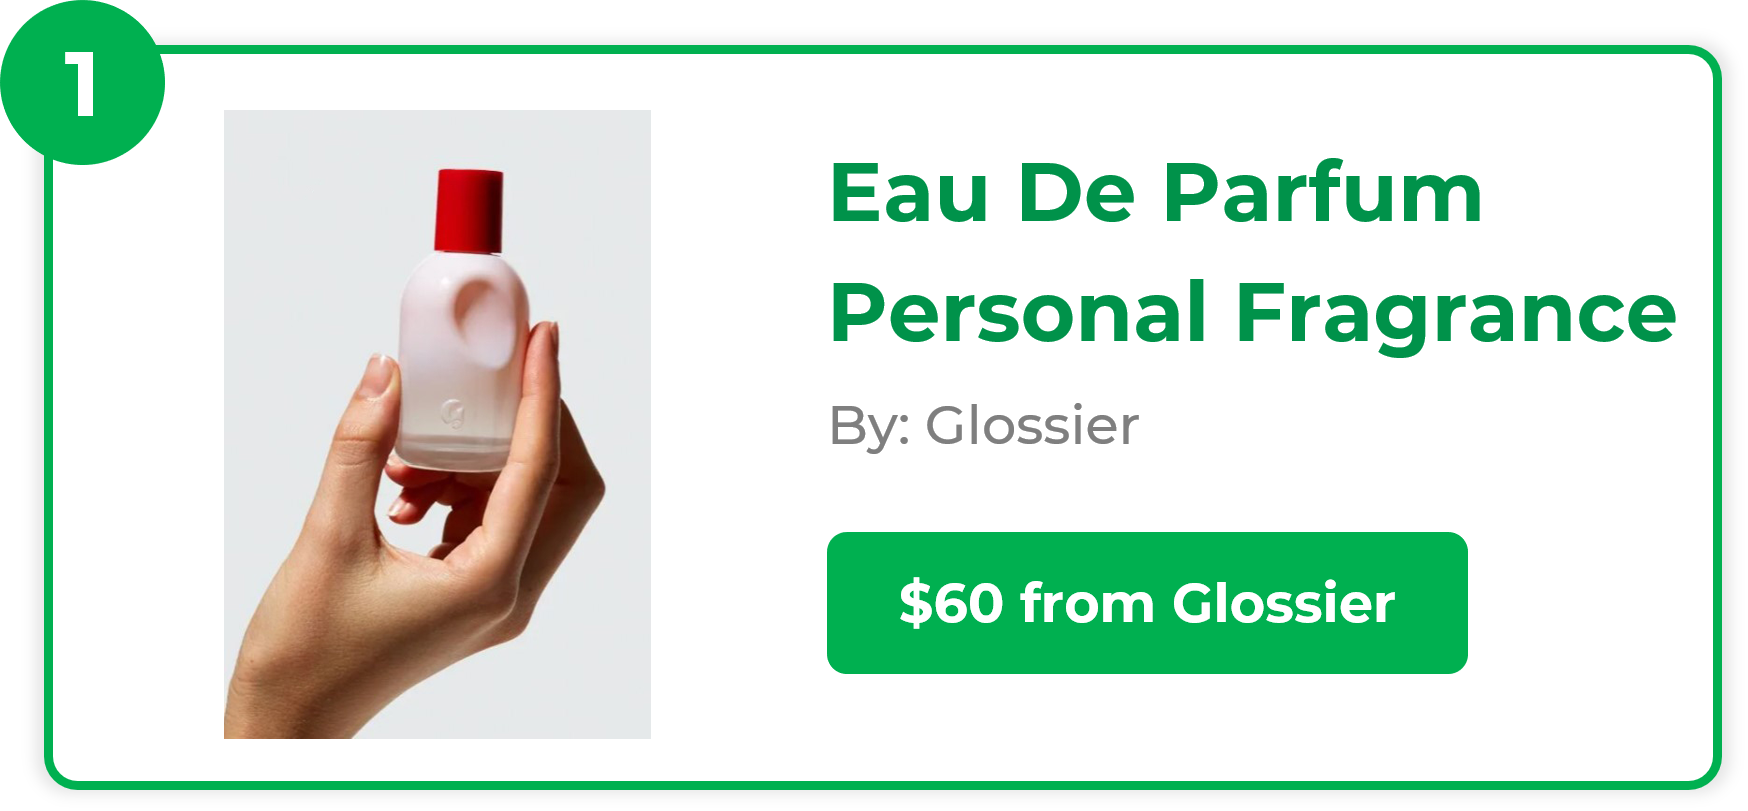 Eau De Parfum Personal Fragrance - Glossier